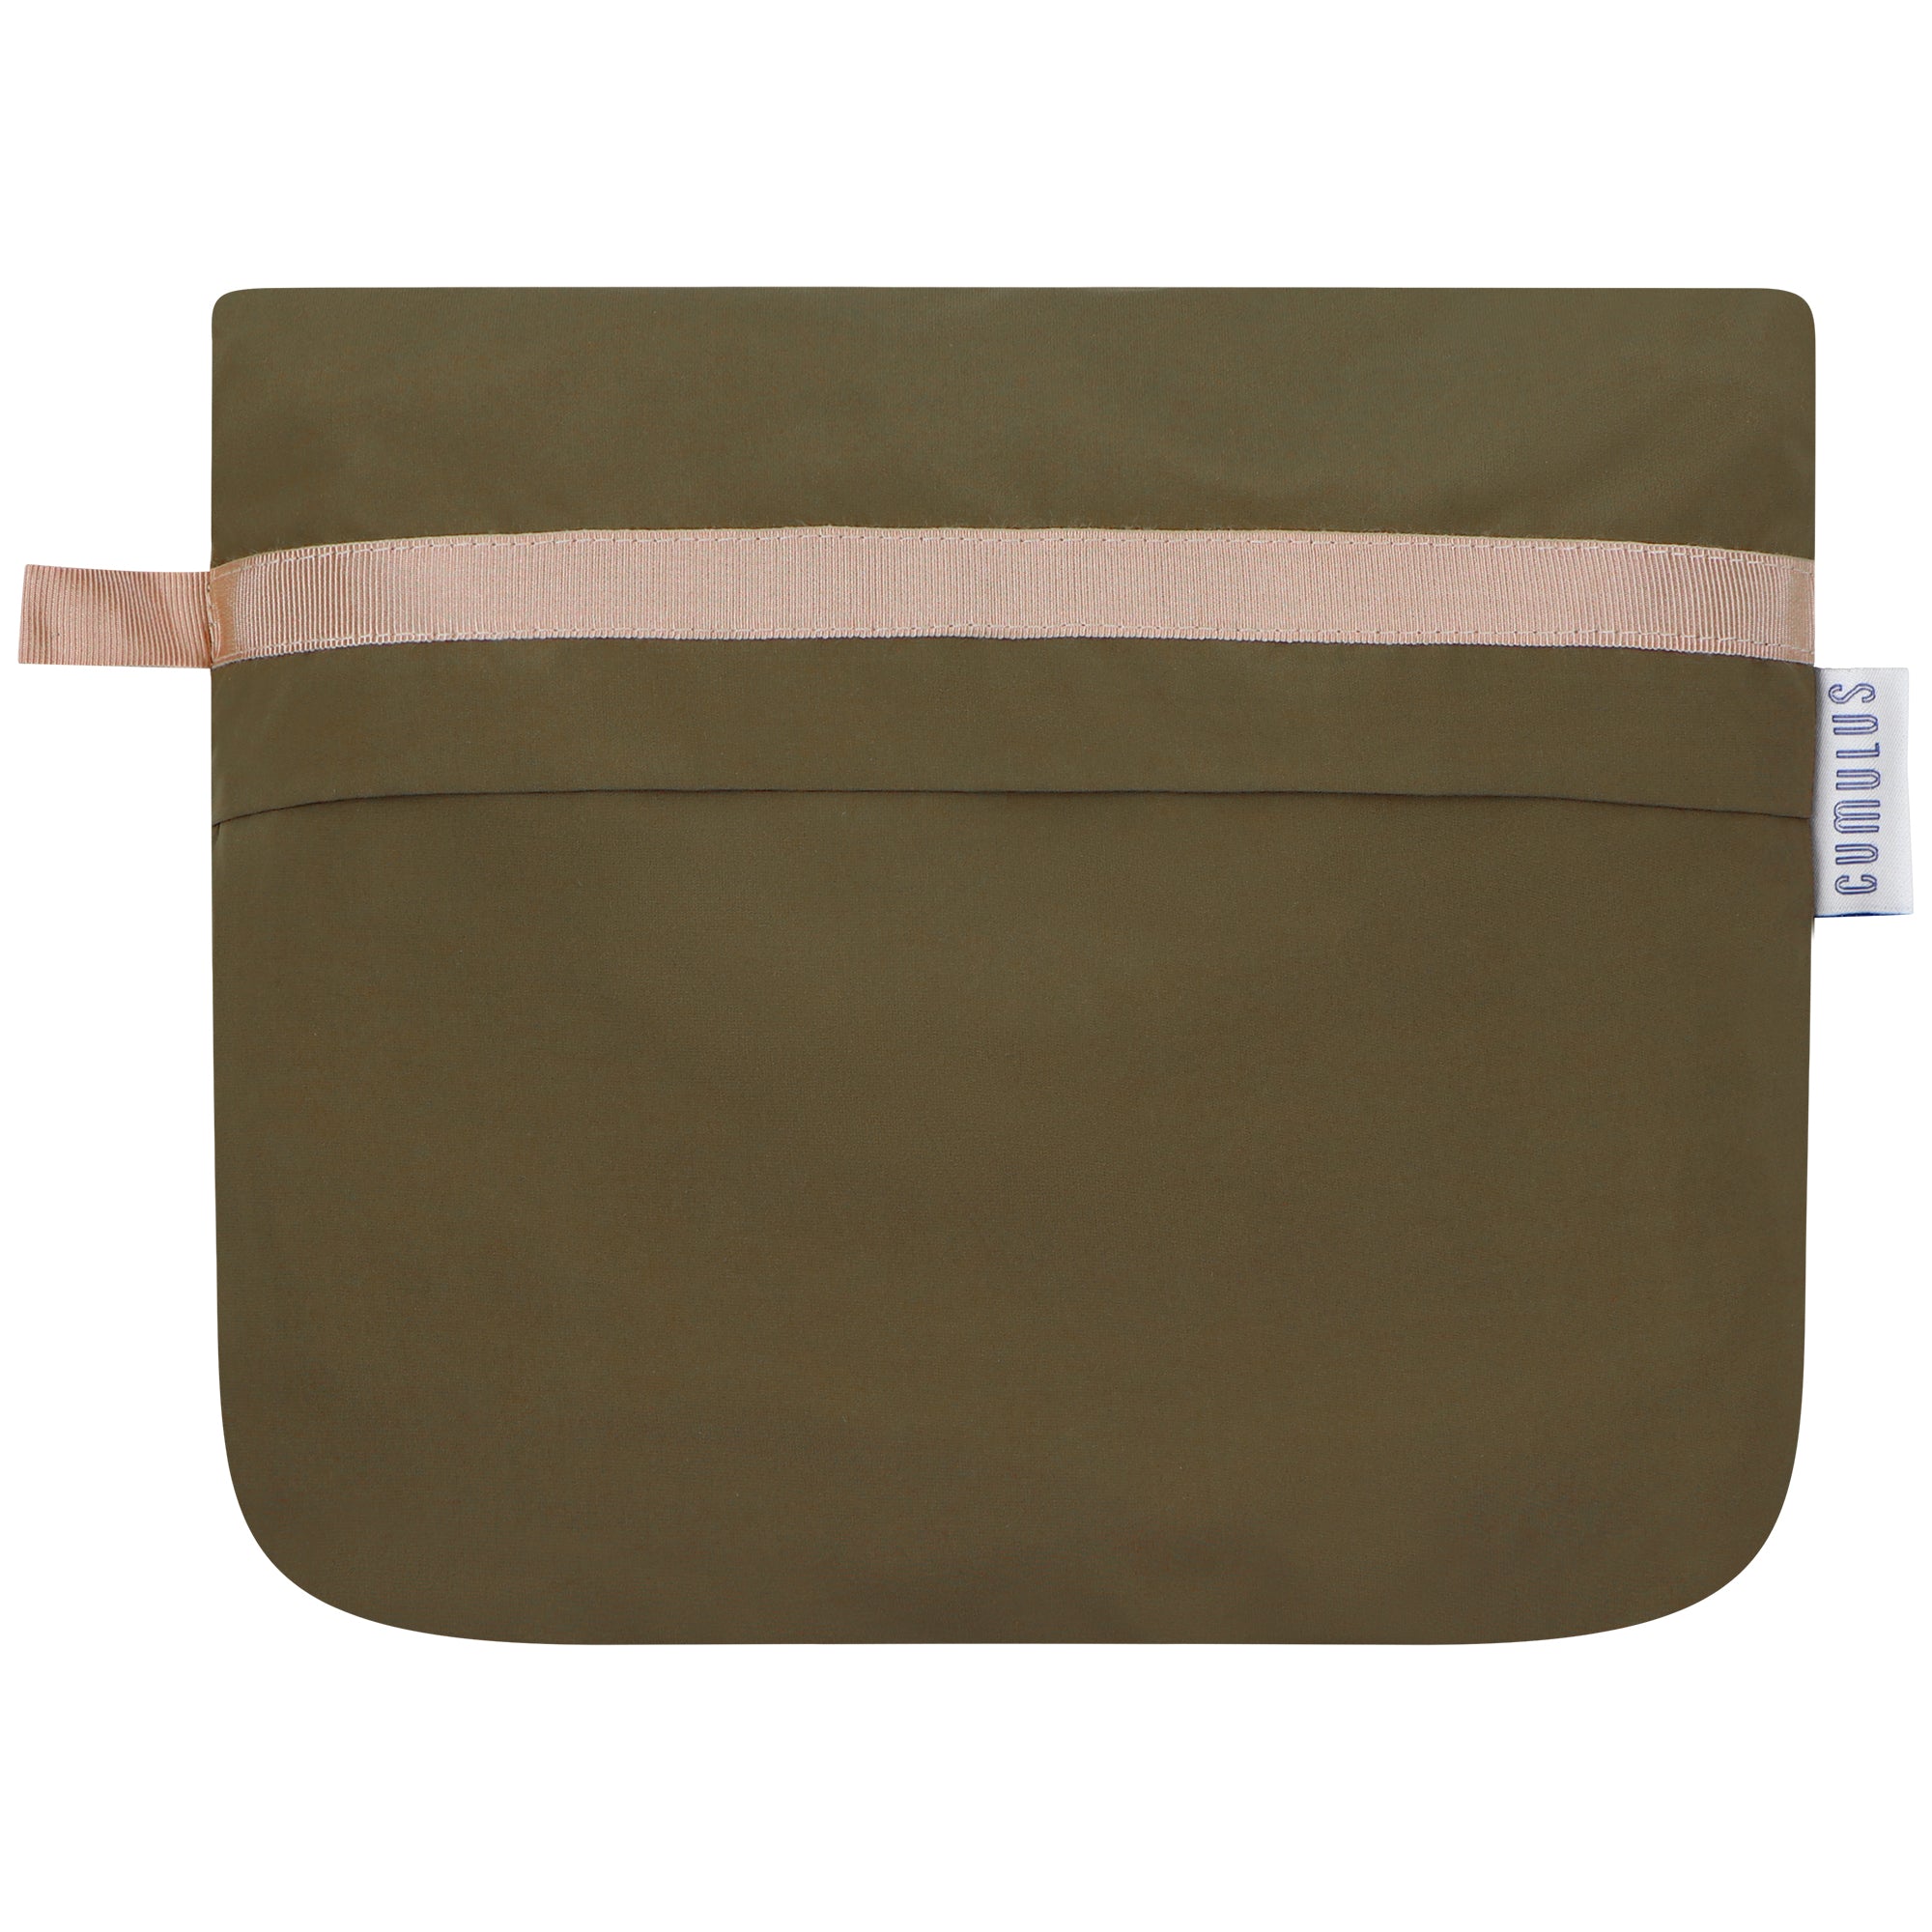 Bise raincoat - Kaki color - pouch bag